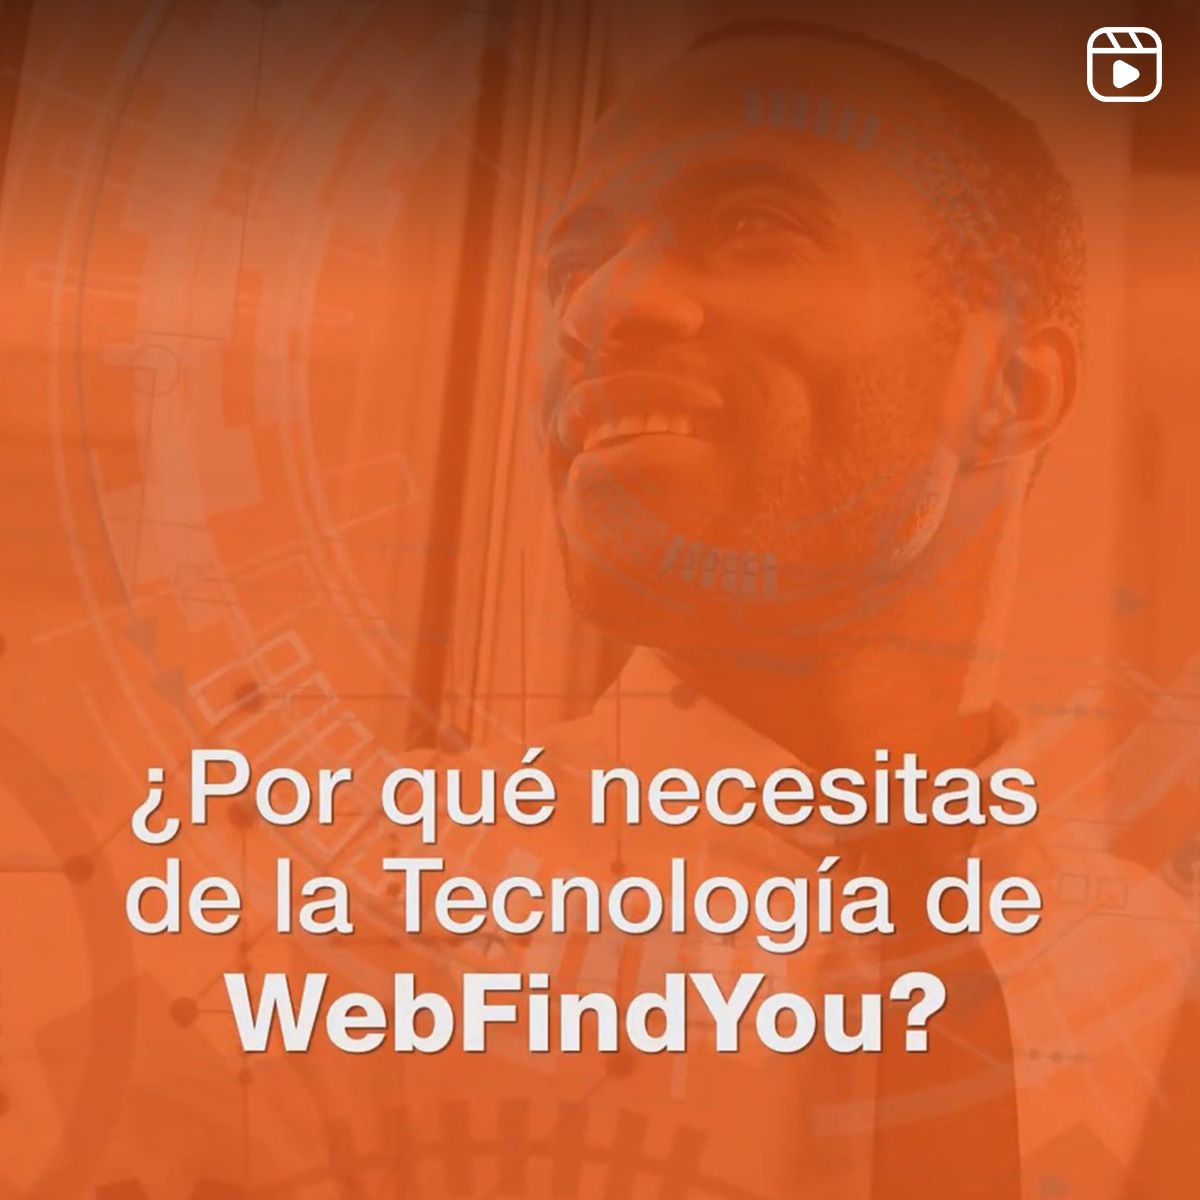 ¿Por qué necesitas de la Tecnología de WebFindYou?